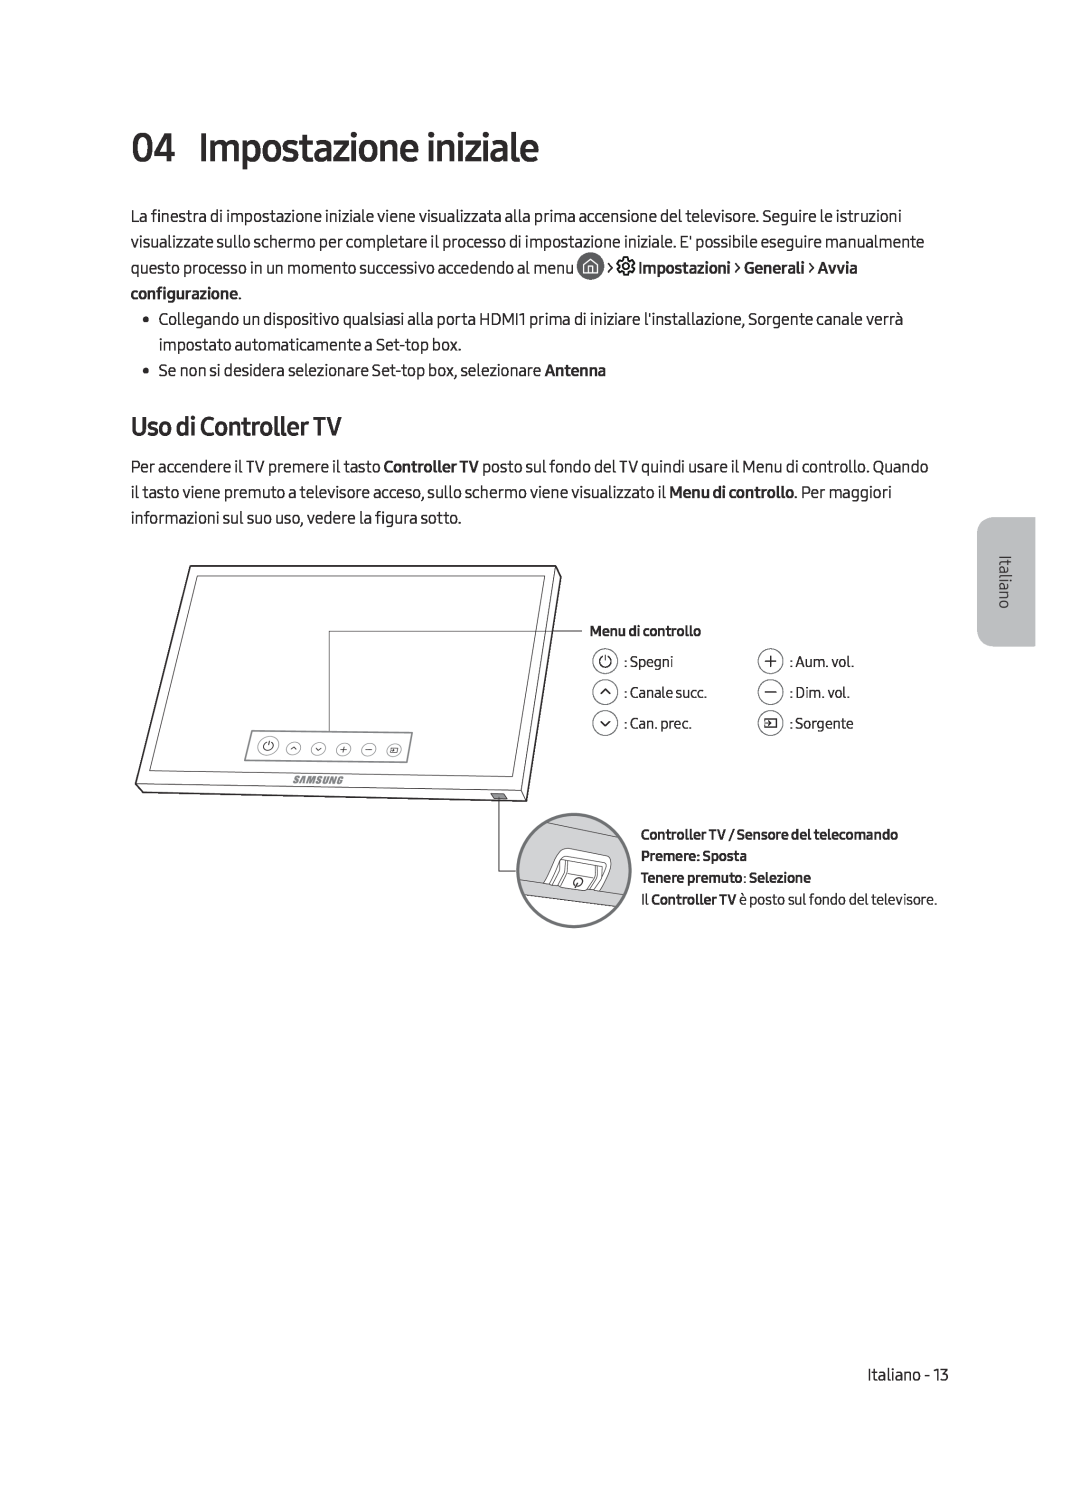 Samsung UE49MU7000TXXU, UE55MU7009TXZG, UE49MU7009TXZG, UE49MU7000TXZG manual Impostazione iniziale, Uso di Controller TV 